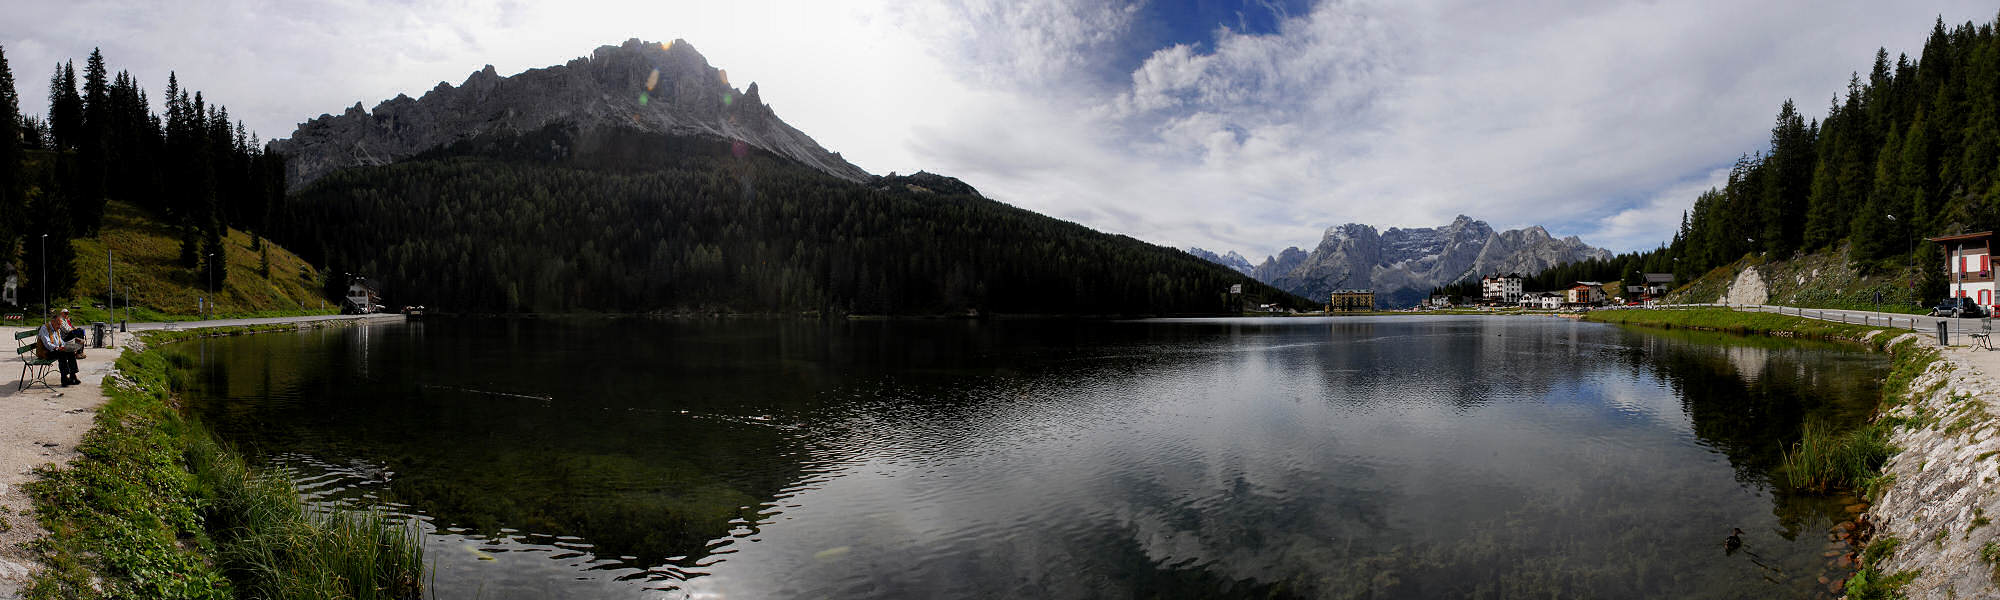 Dolomiti, Lago di Misurina alle Tre Cime di Lavaredo